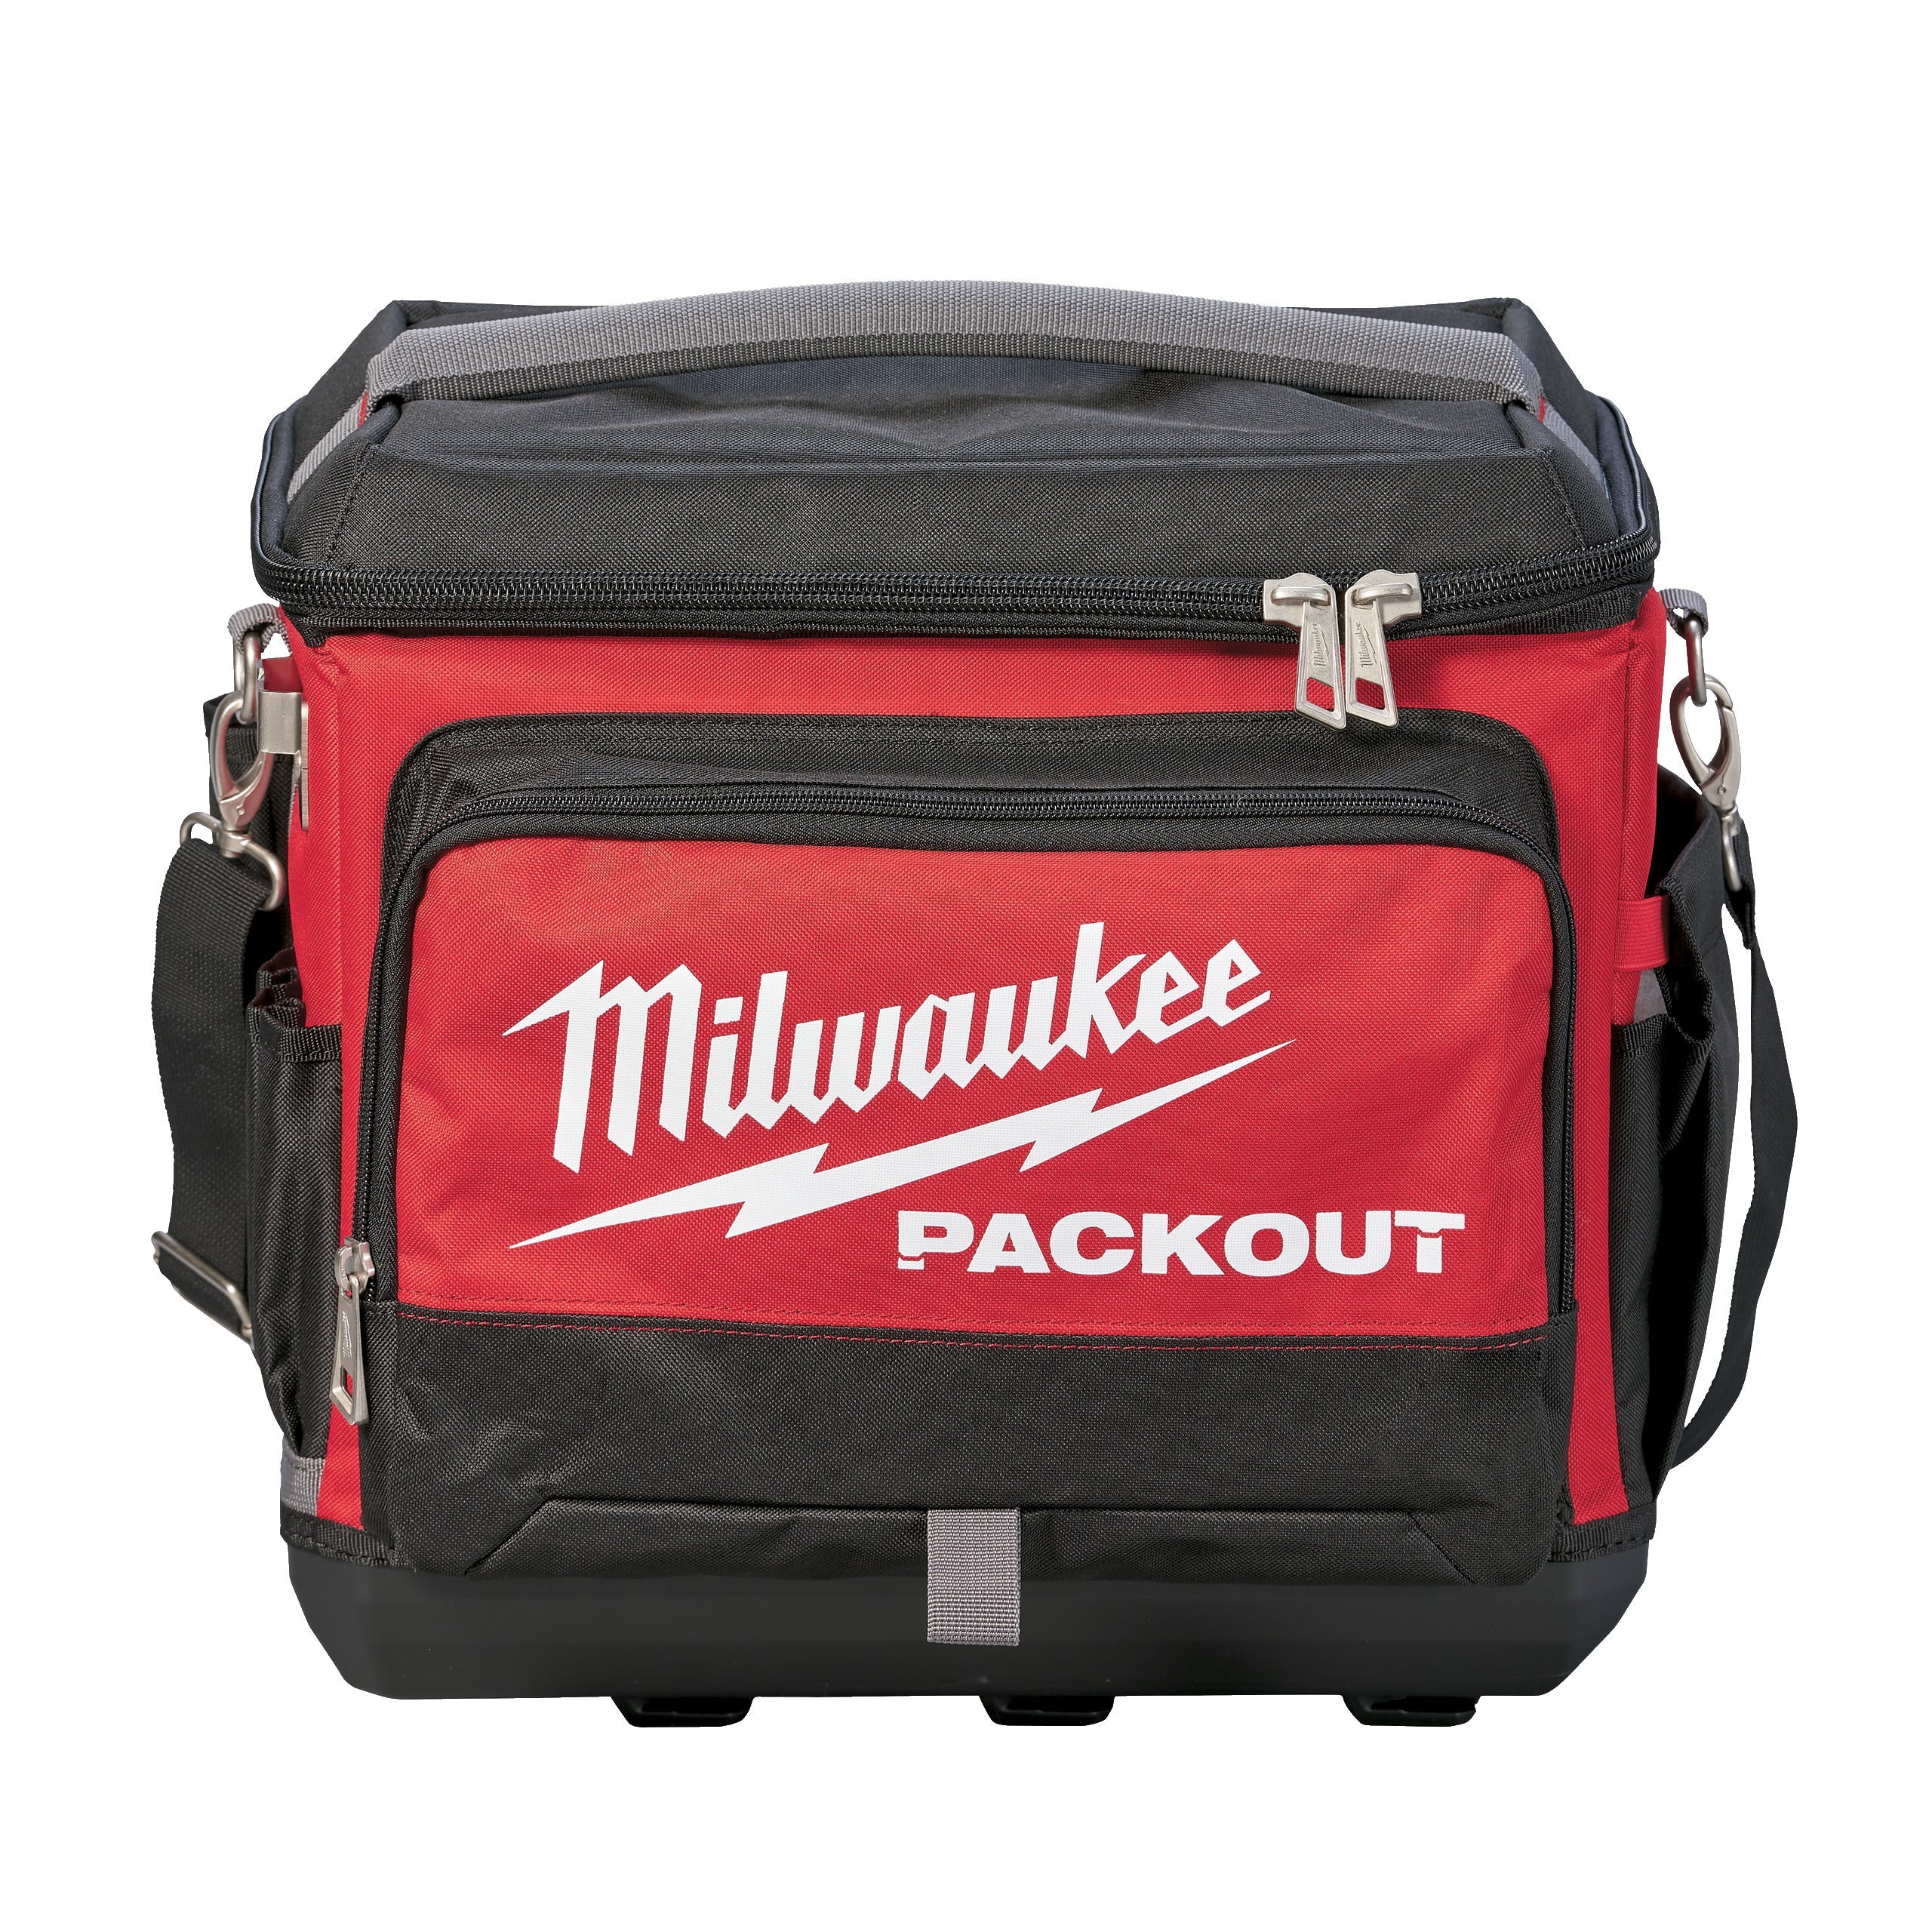 Geantă termică Packout Milwaukee cod 4932471132